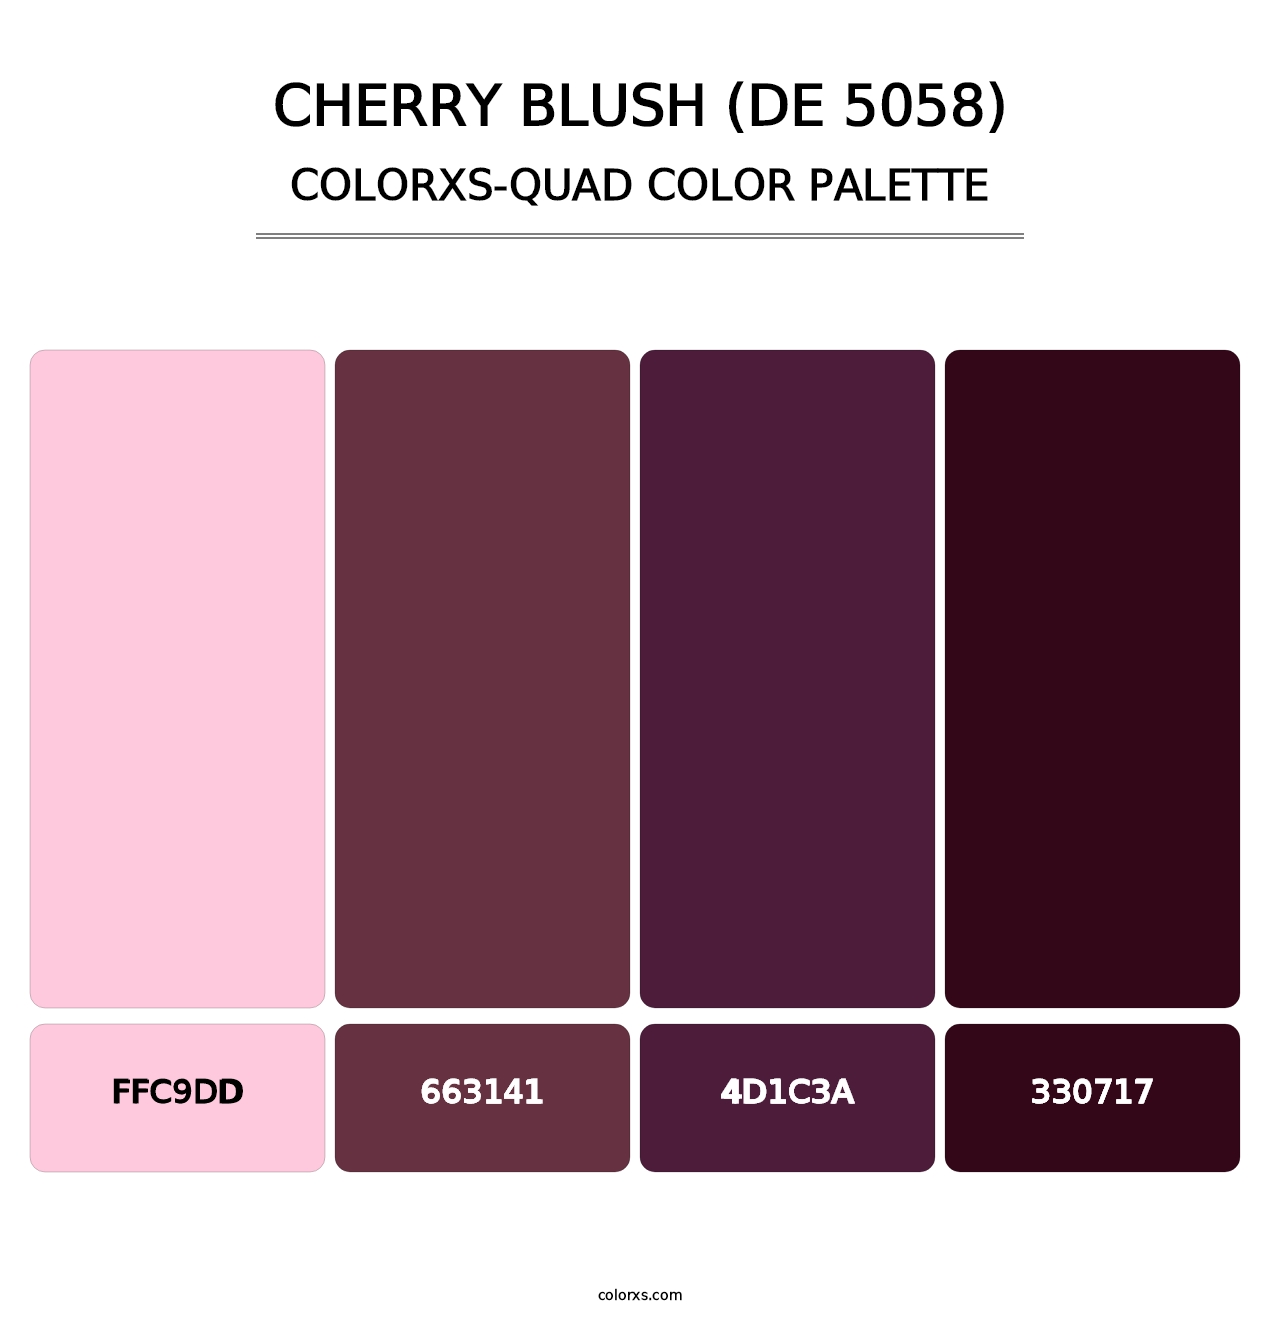 Cherry Blush (DE 5058) - Colorxs Quad Palette